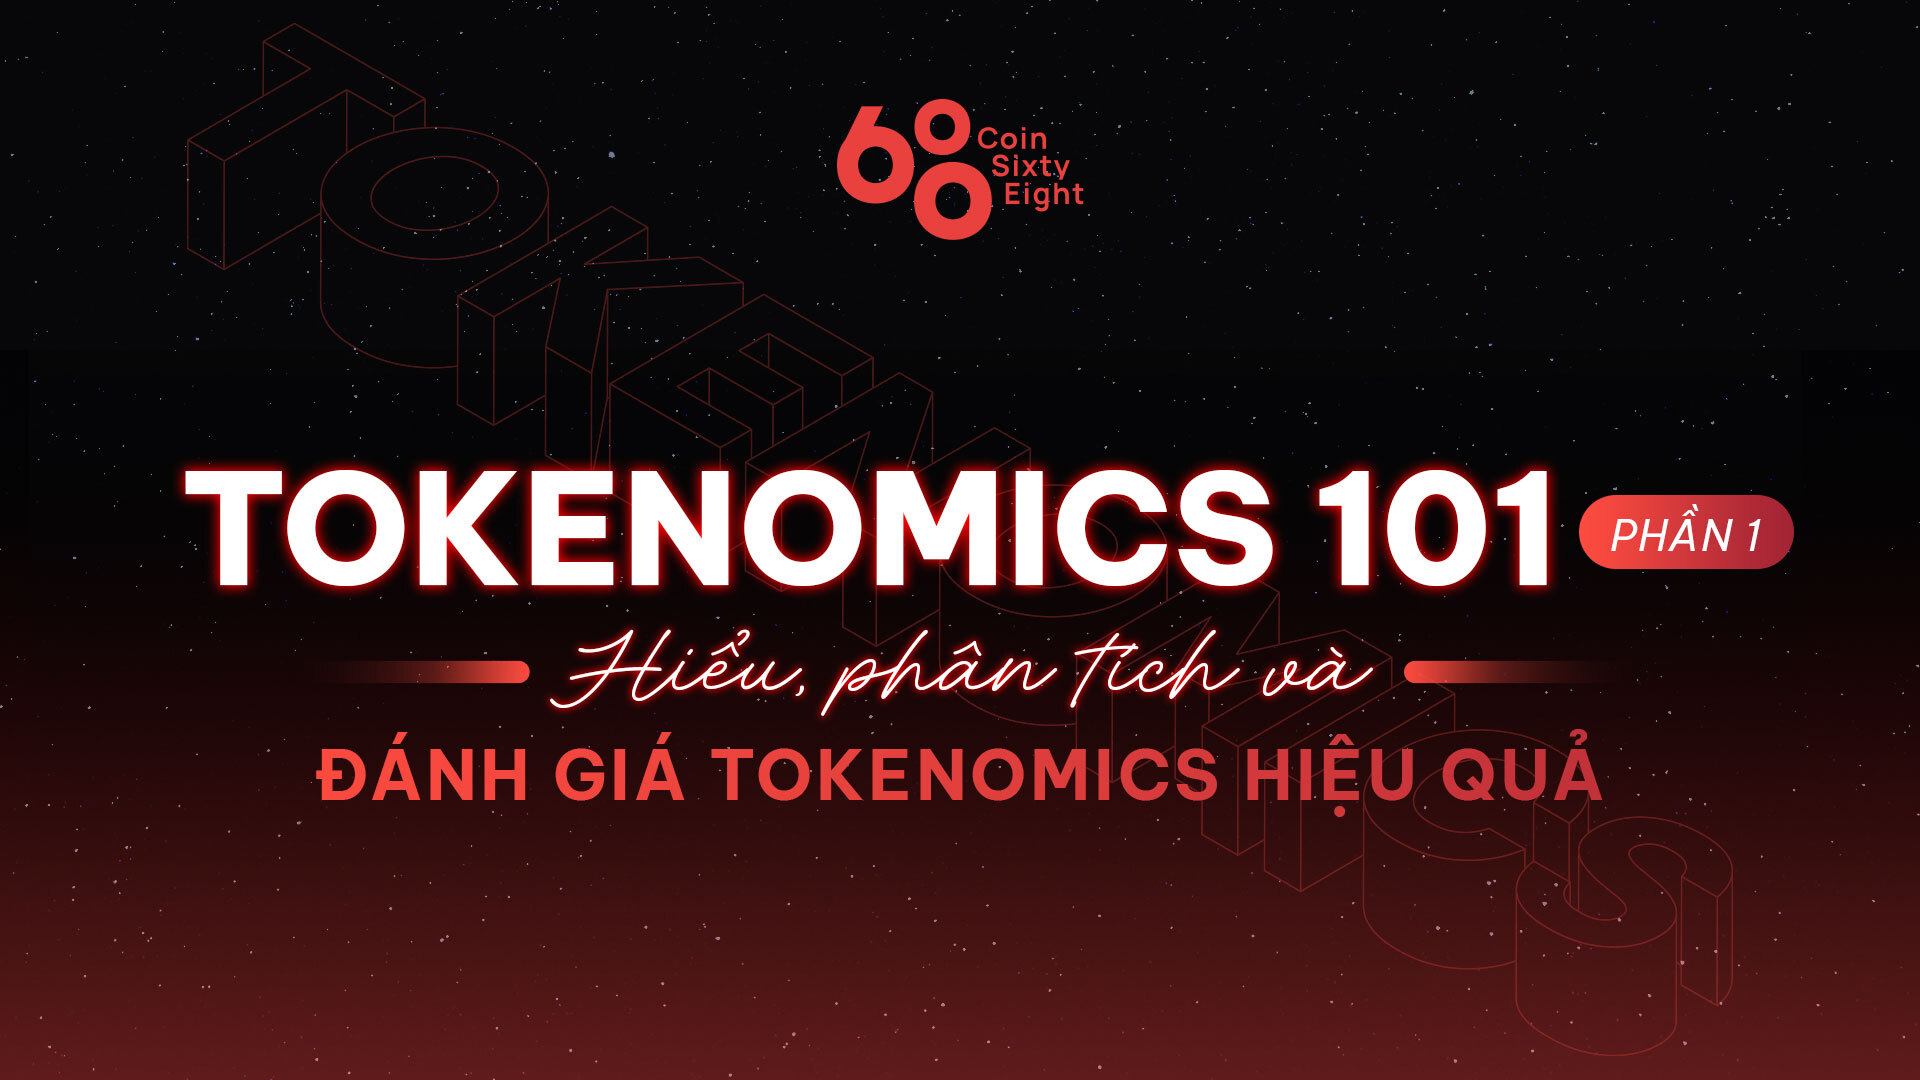 Tokenomics 101 (Phần 1) – Hiểu, phân tích và đánh giá Tokenomics hiệu quả